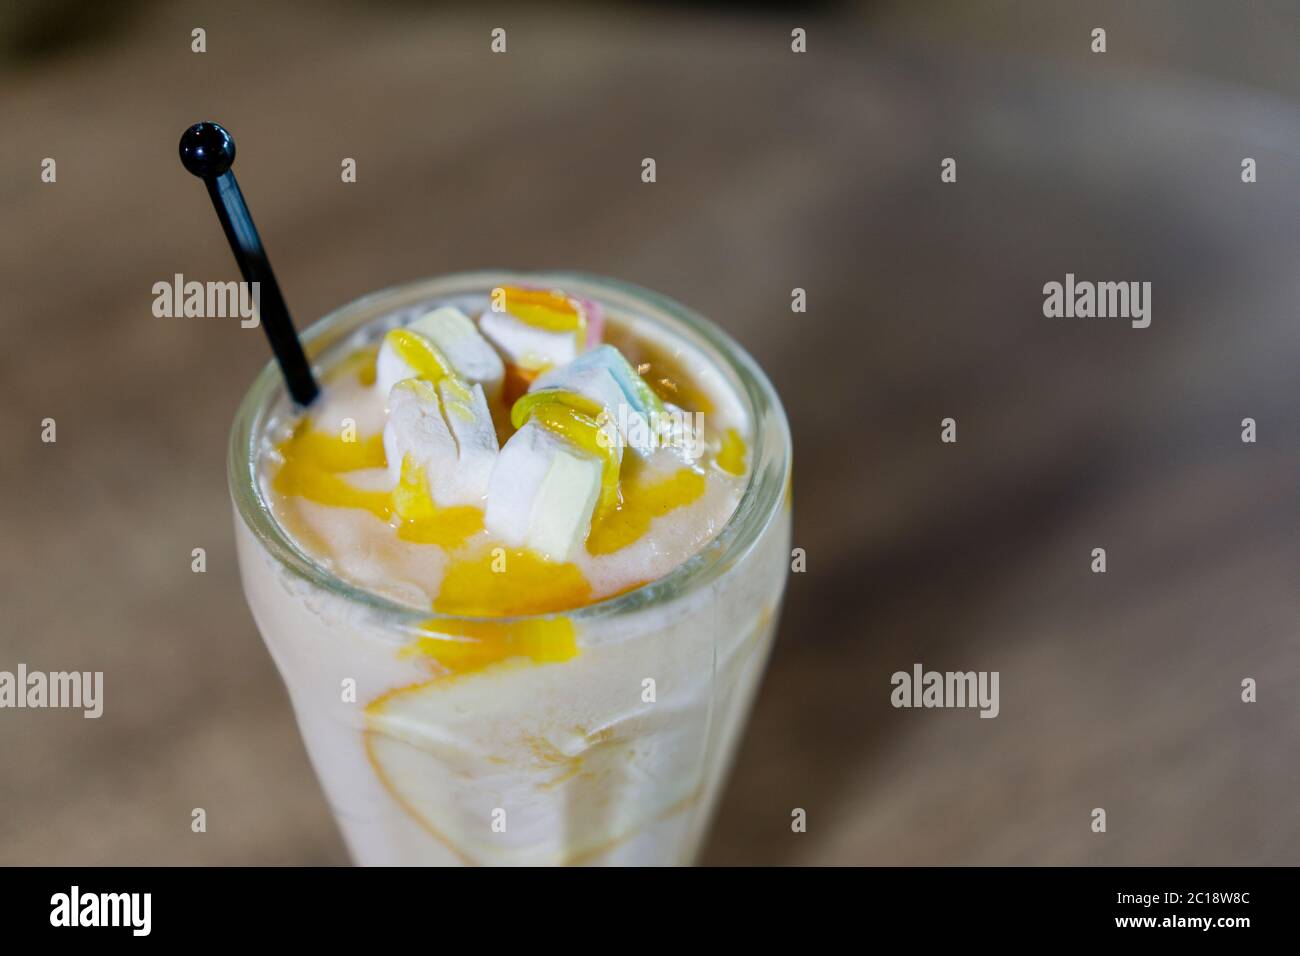 Mangue Lassi ou yaourt, boisson estivale populaire indienne servie dans un verre, recouvert de guimauves. Banque D'Images